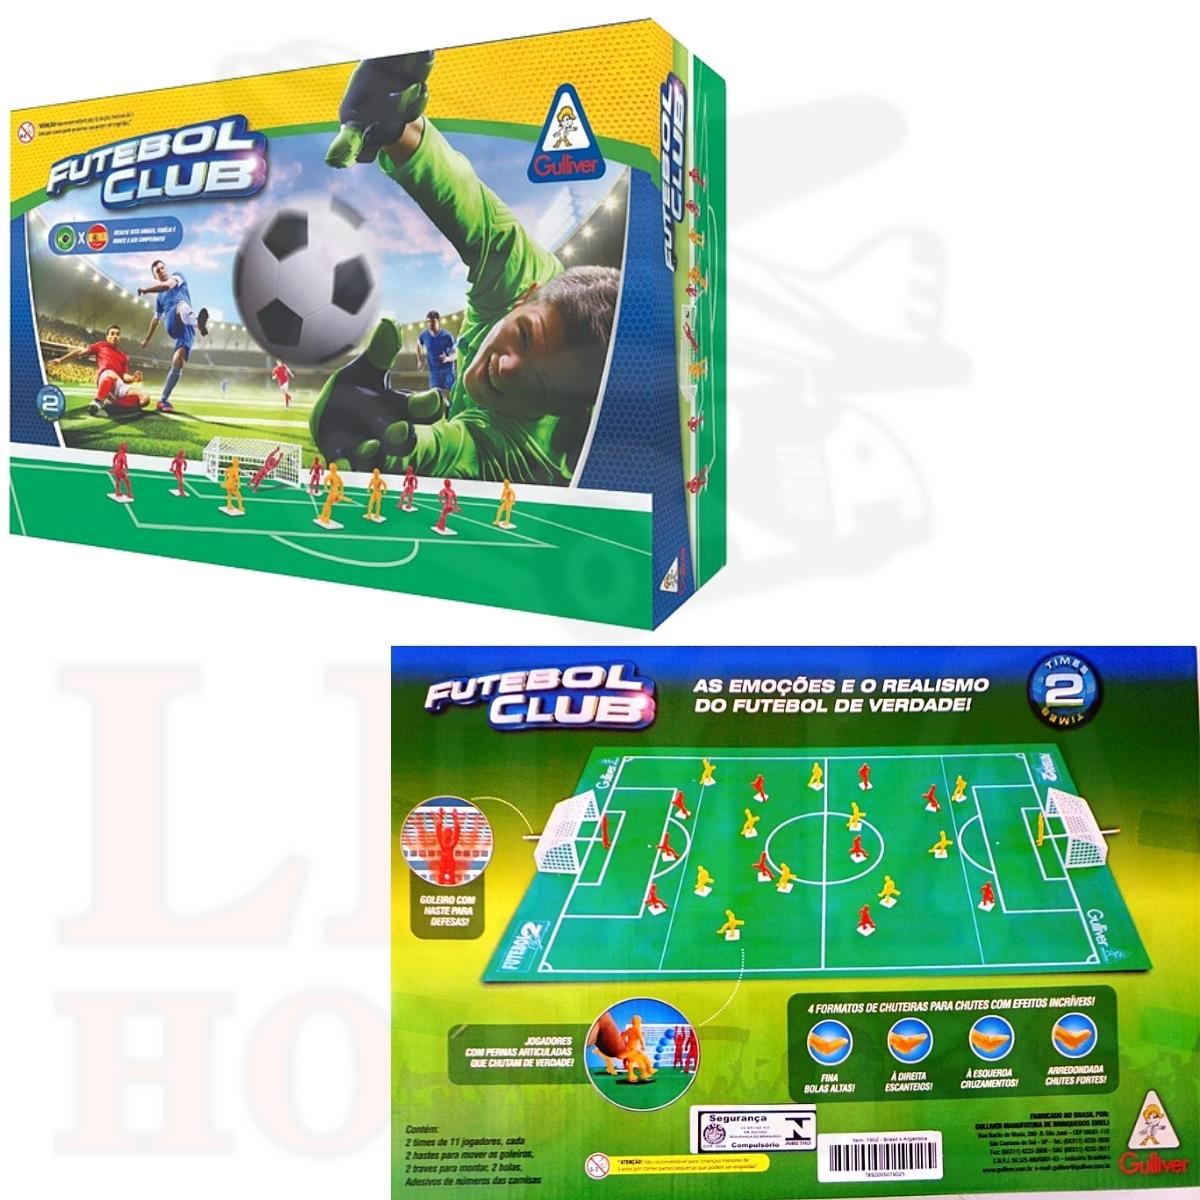 Jogo de Botão Copa do Brasil Junges - Up Brinquedos